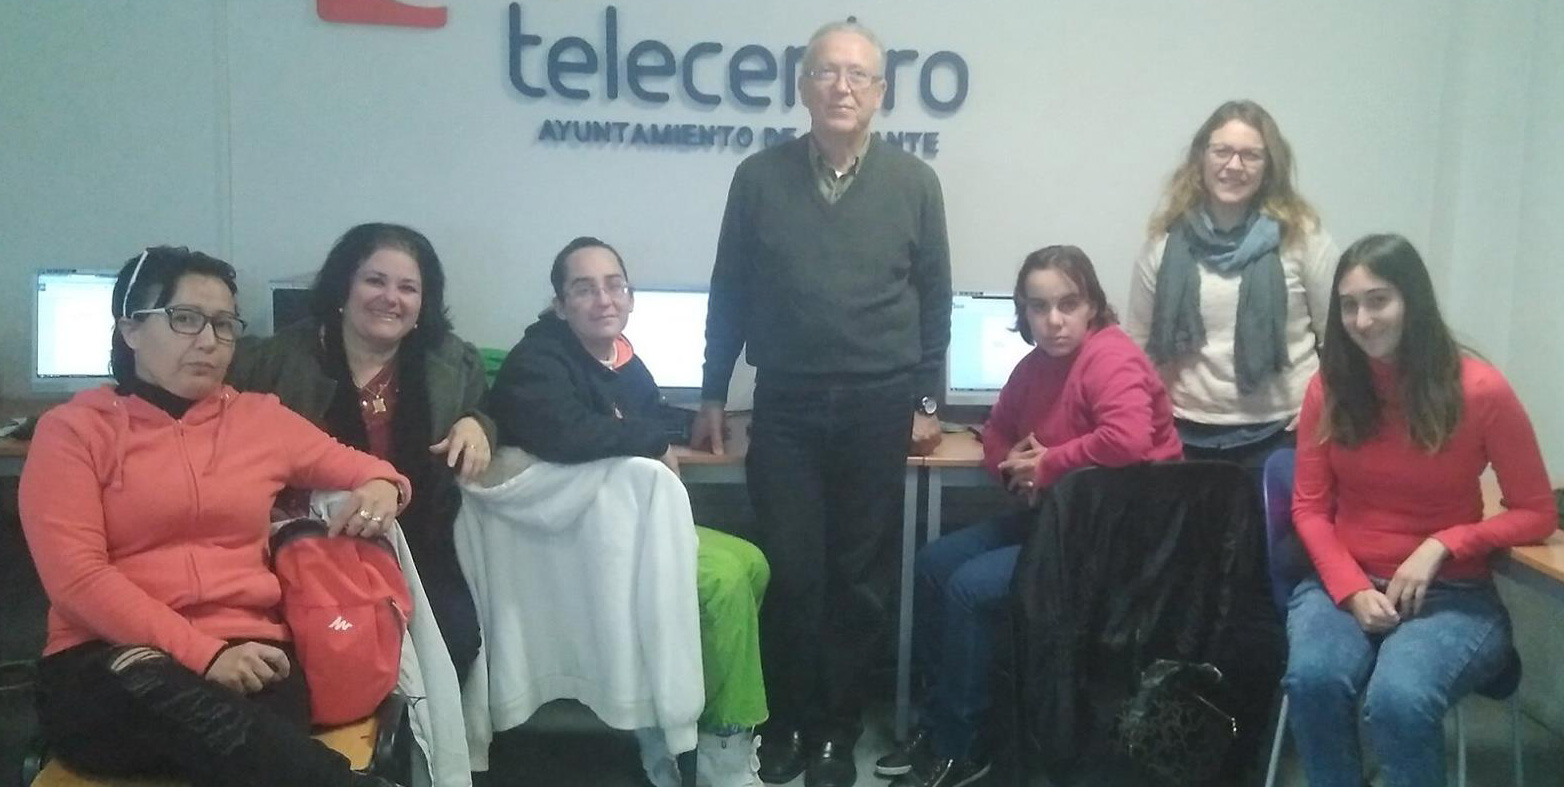 Competencias digitales en colaboración con COCEMFE Alicante con Innovadoras TIC